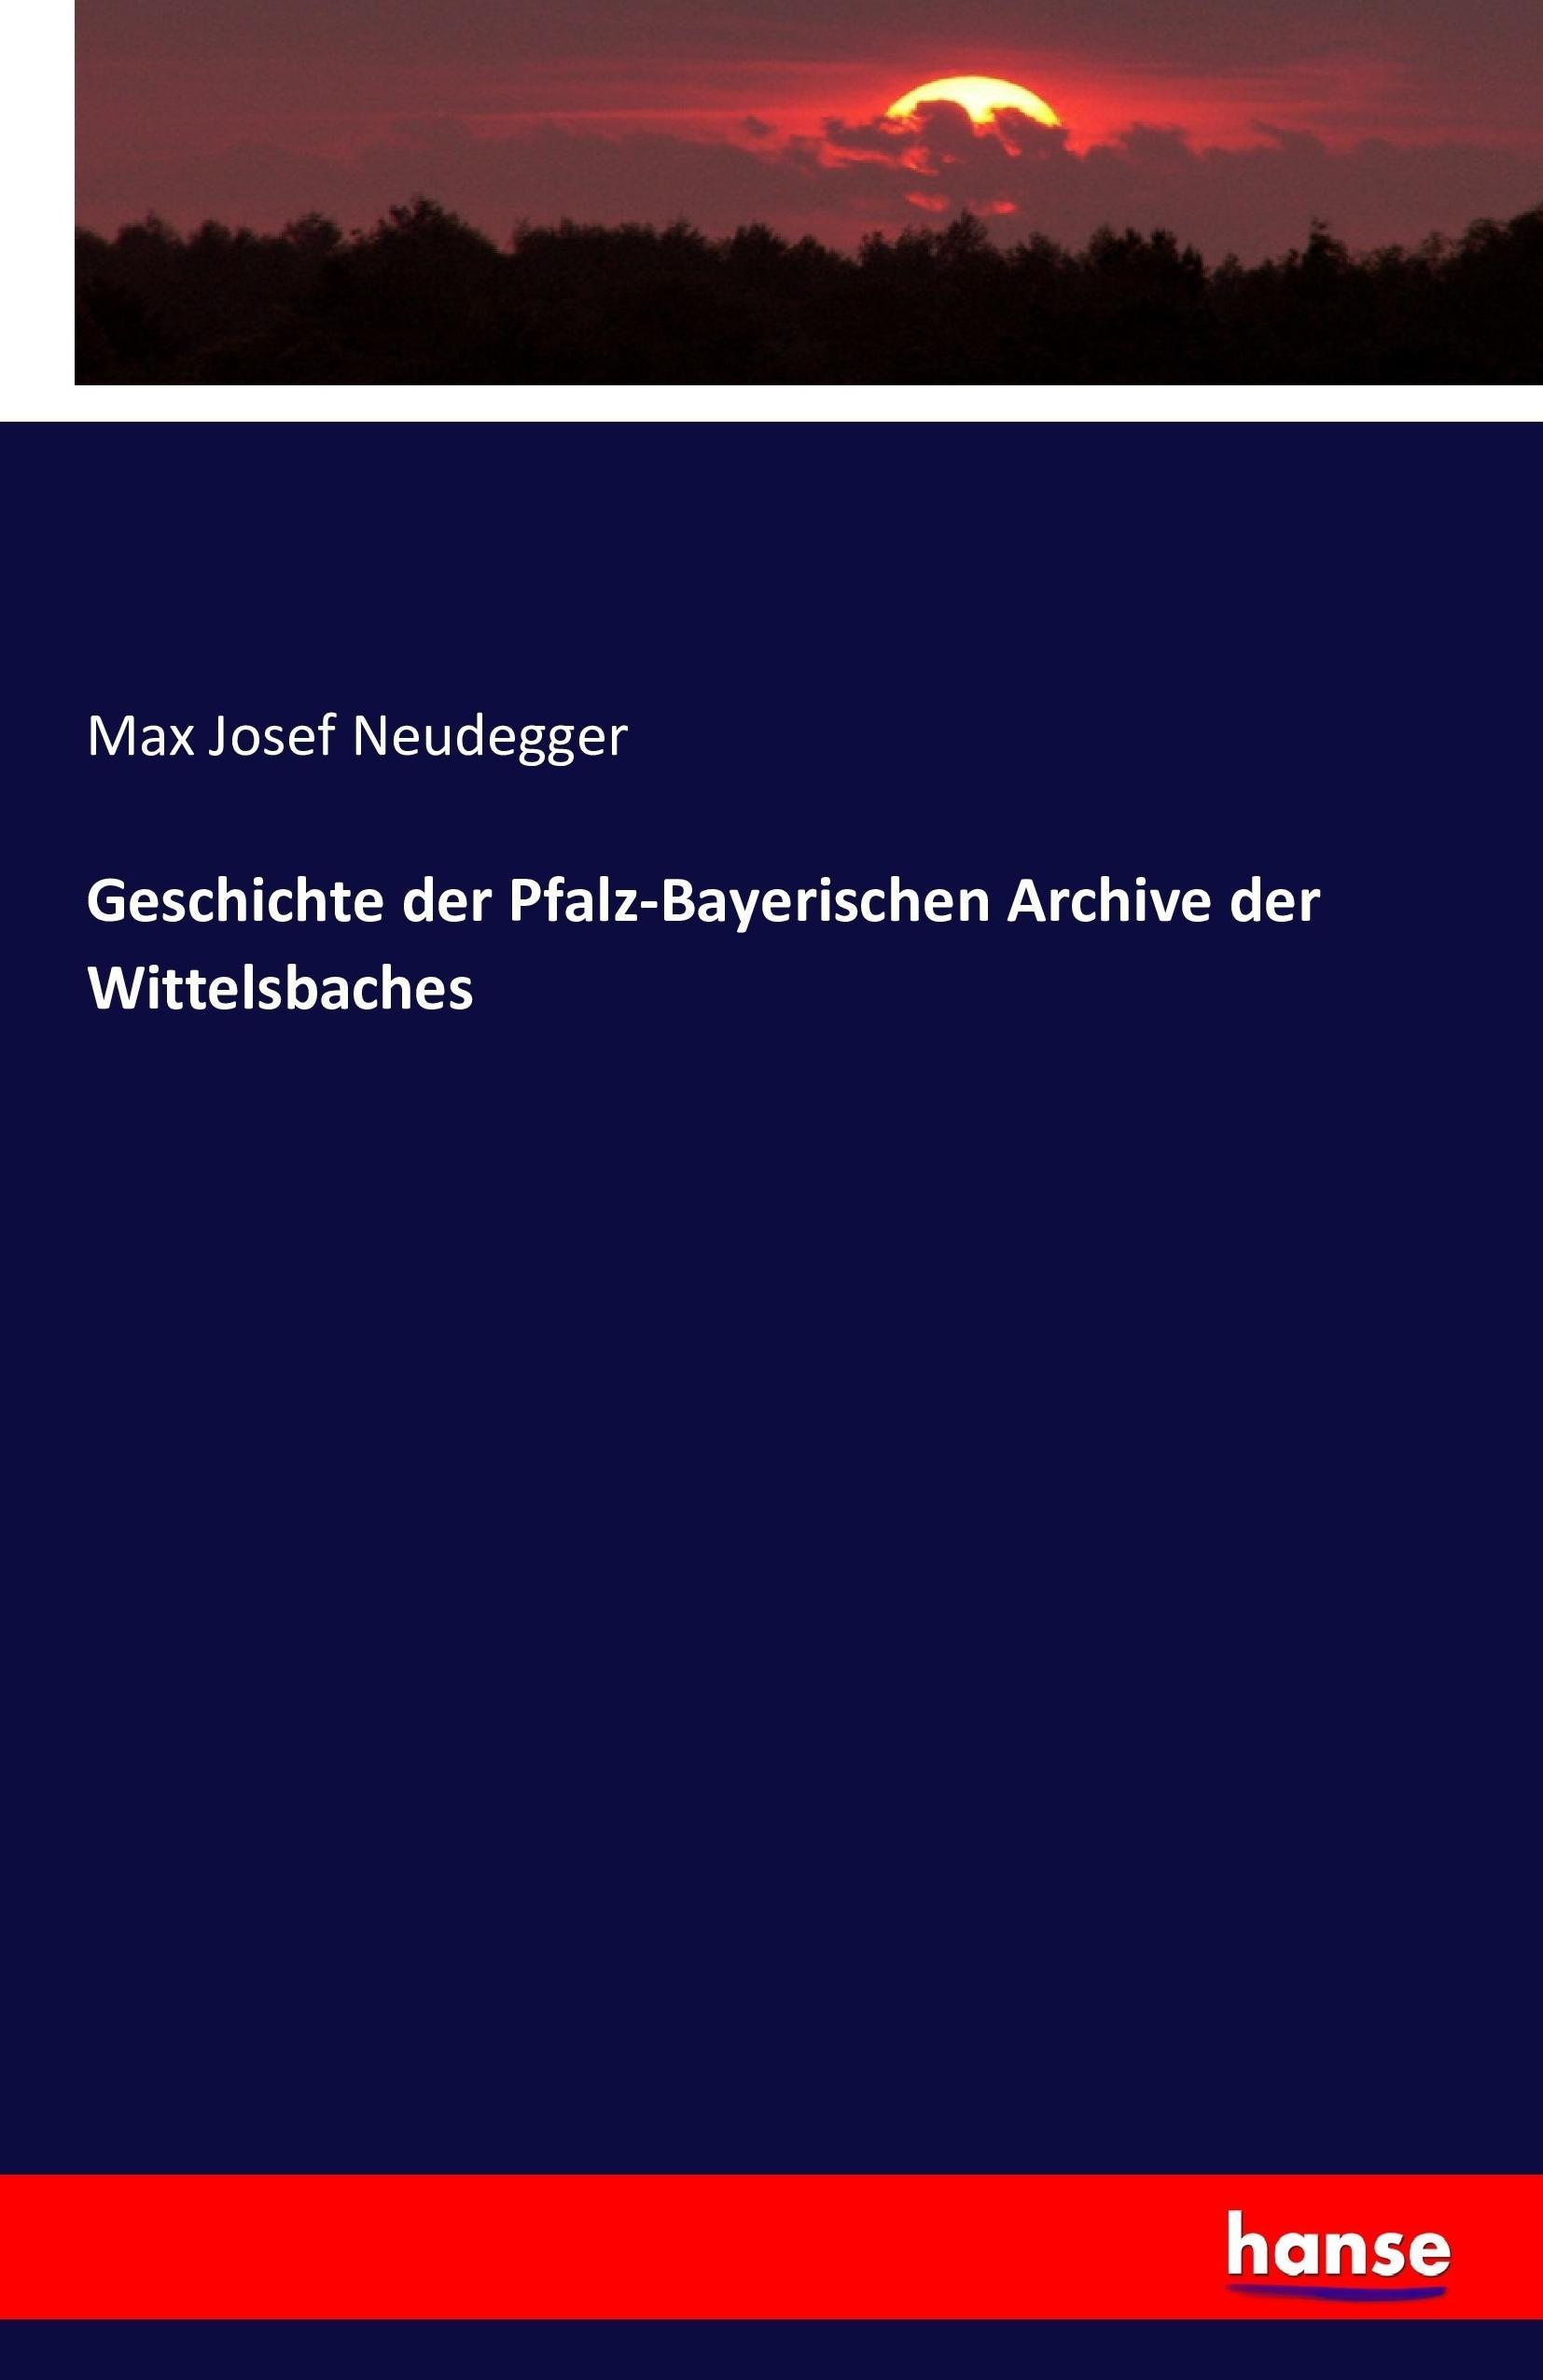 Geschichte der Pfalz-Bayerischen Archive der Wittelsbaches - Neudegger, Max Josef